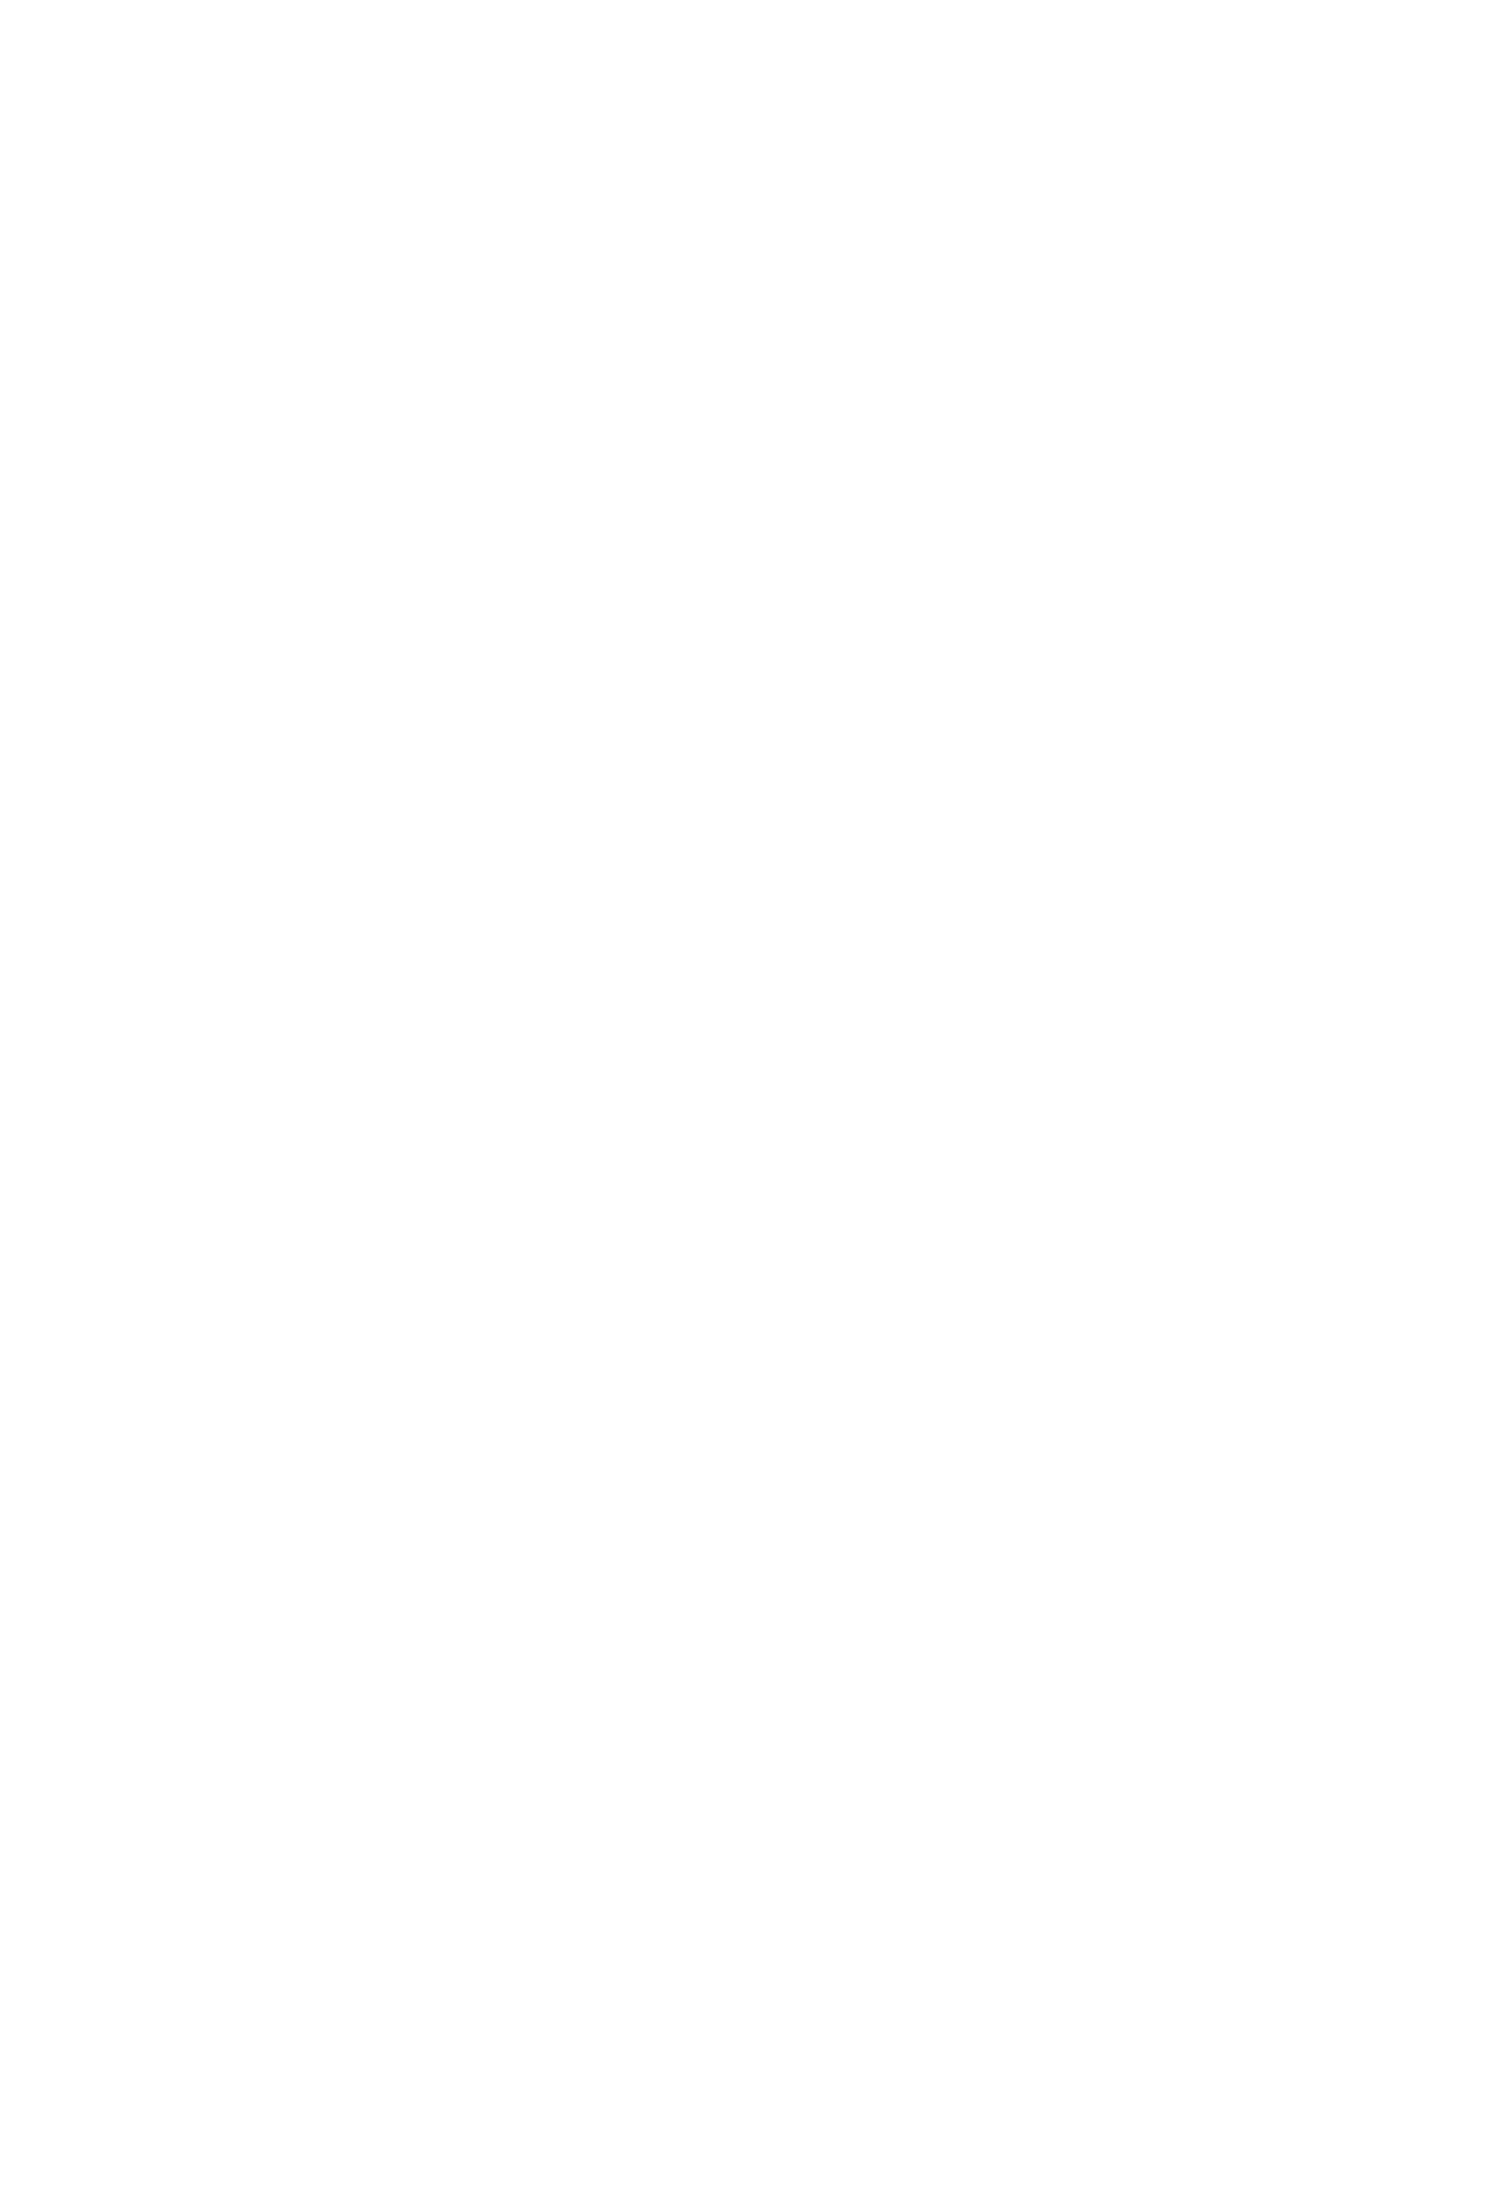 Aya Research Institute